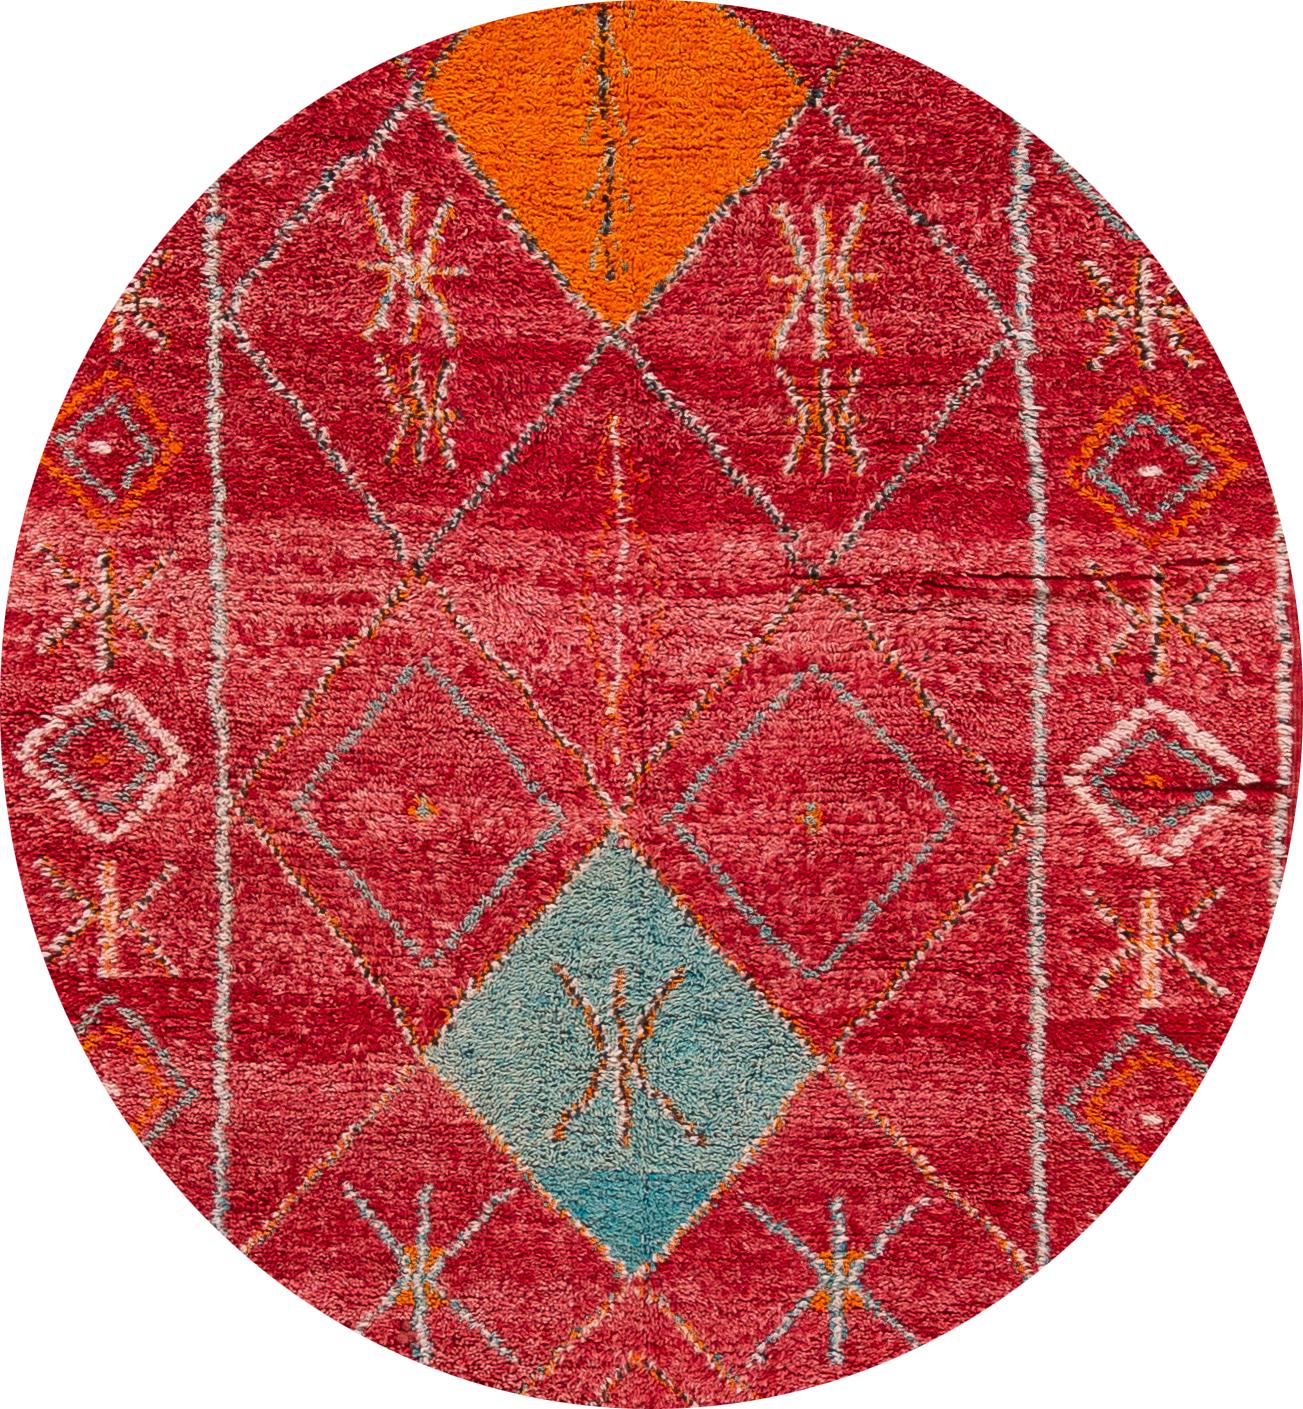 Magnifique tapis marocain vintage, en laine nouée à la main, avec un champ rouge vif, des accents orange et bleus dans un design à médaillons multiples,
vers 1980.
Ce tapis mesure 4' 7